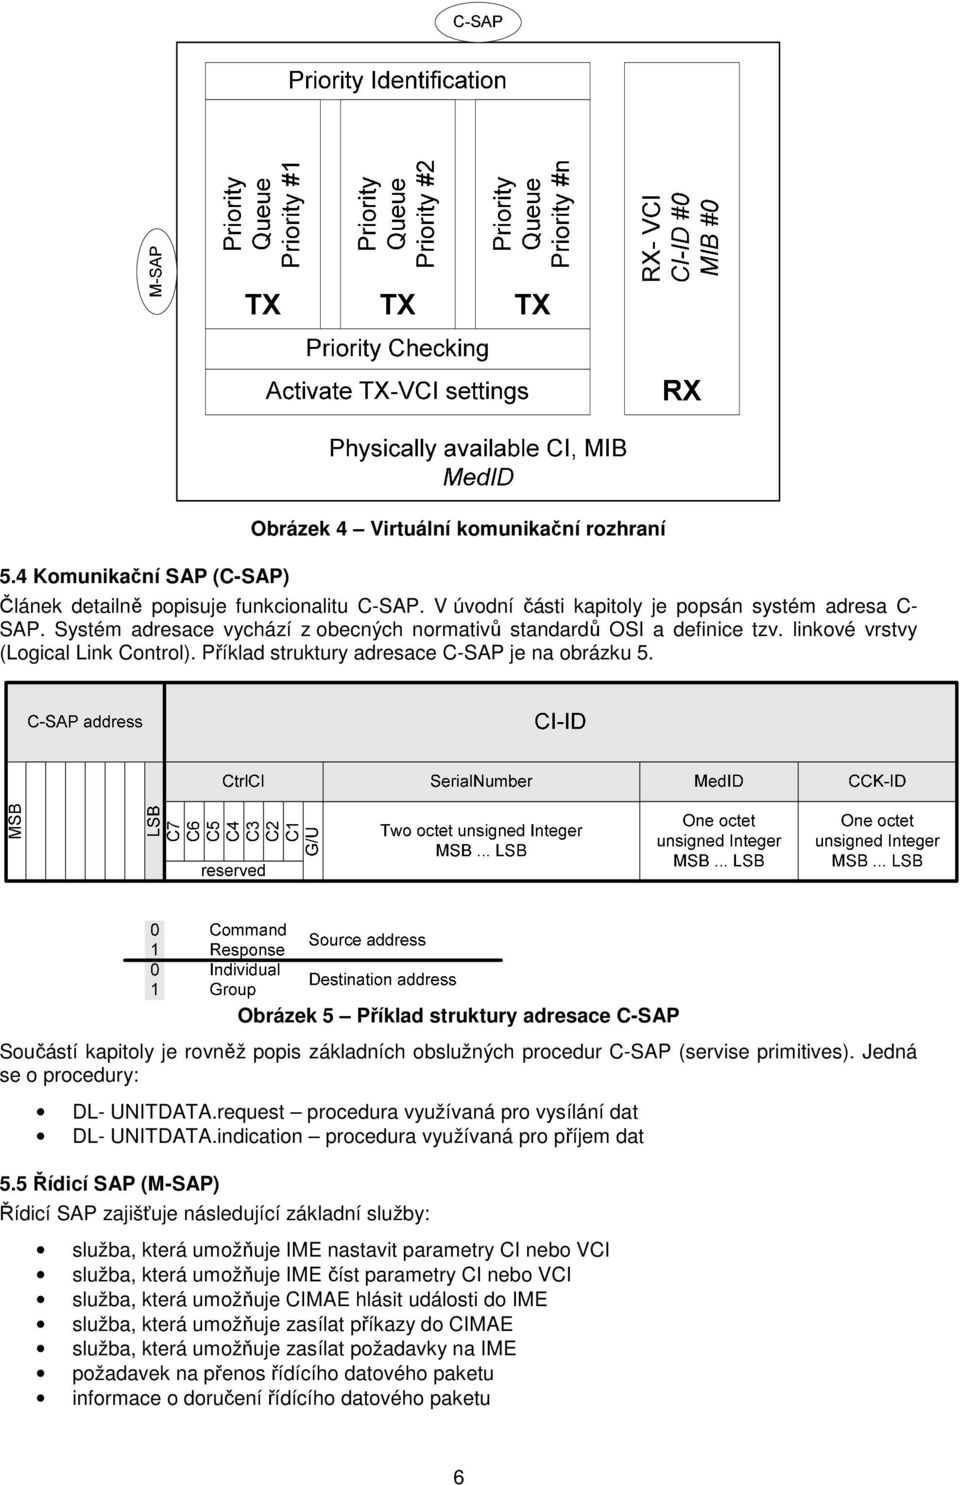 Obrázek 5 Příklad struktury adresace C-SAP Součástí kapitoly je rovněž popis základních obslužných procedur C-SAP (servise primitives). Jedná se o procedury: DL- UNITDATA.